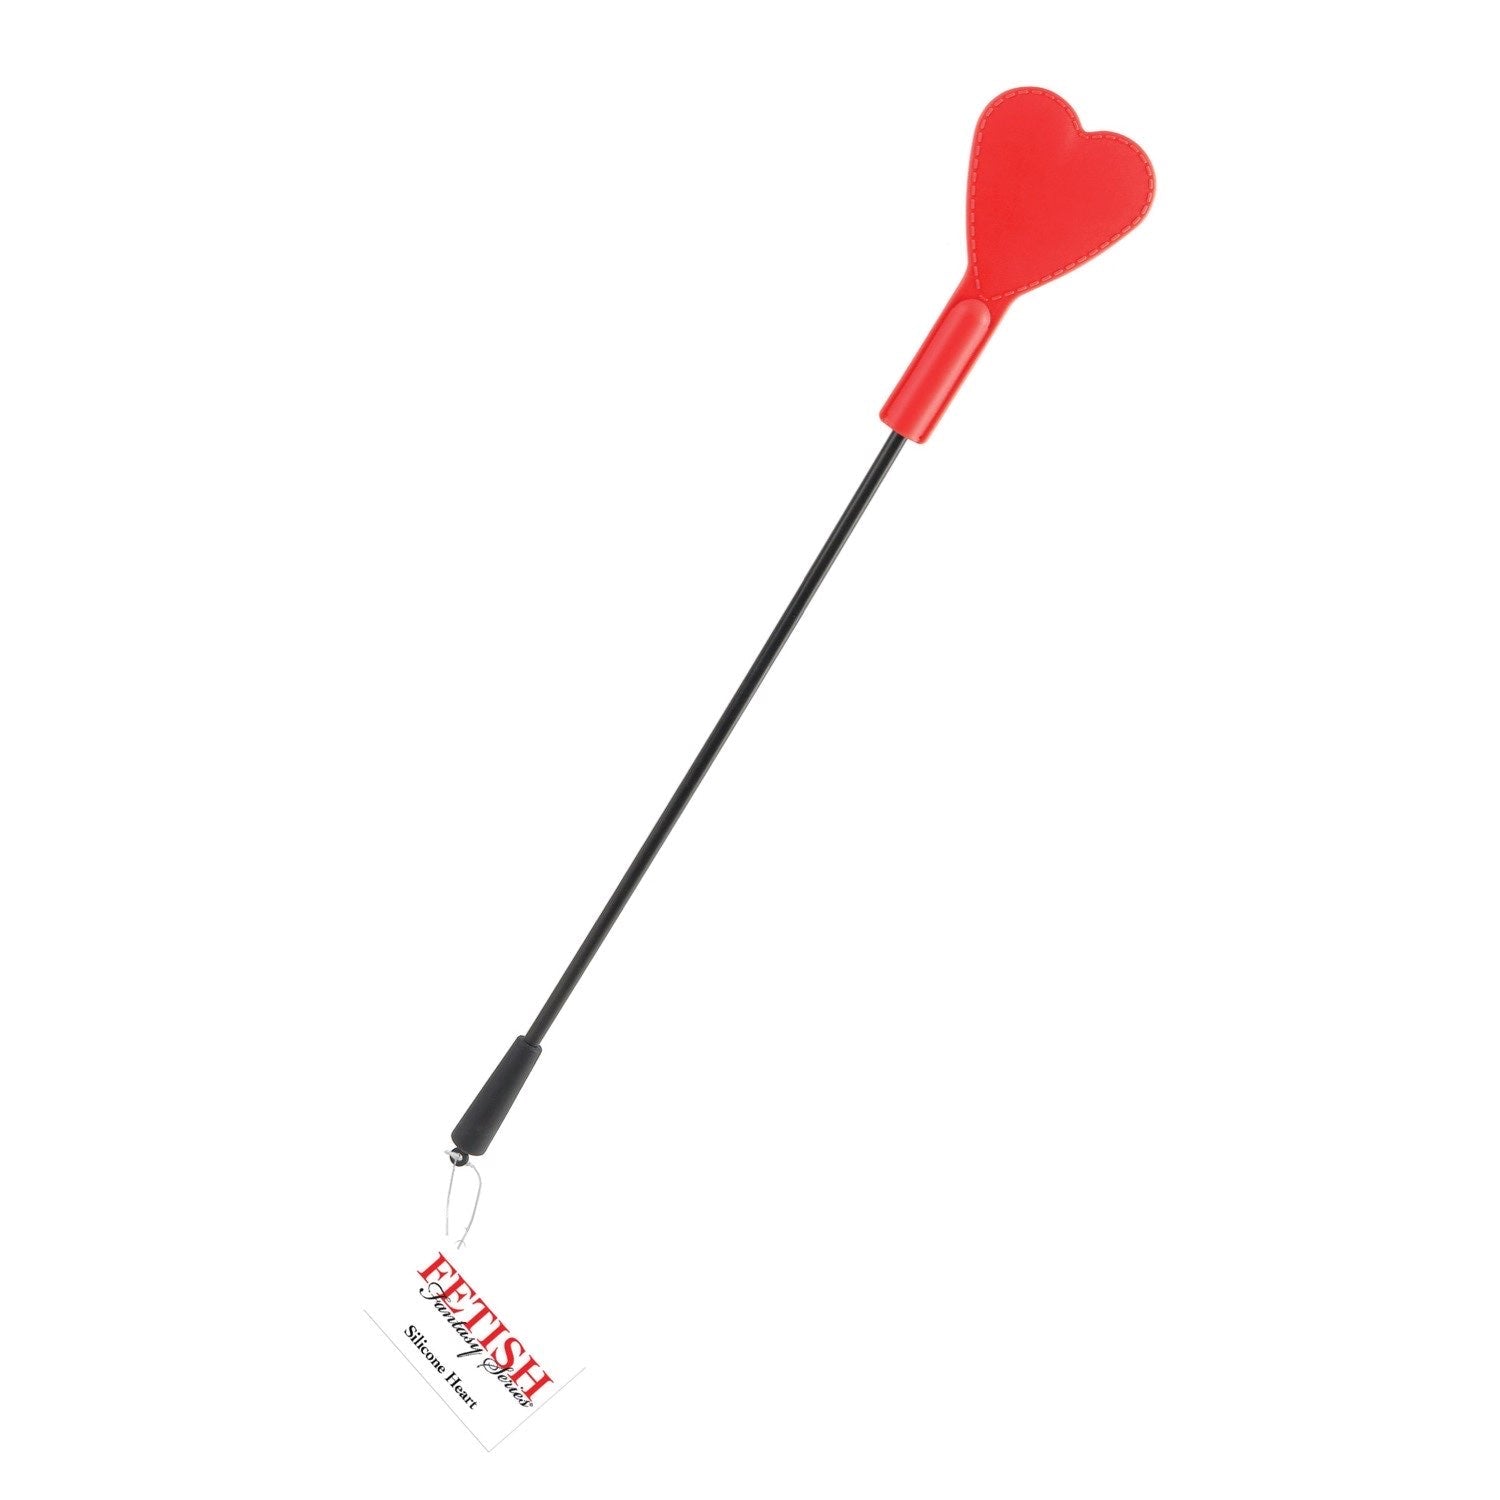 कामोत्तेजक काल्पनिक श्रृंखला सिलिकॉन हार्ट - लाल चाबुक by Pipedream